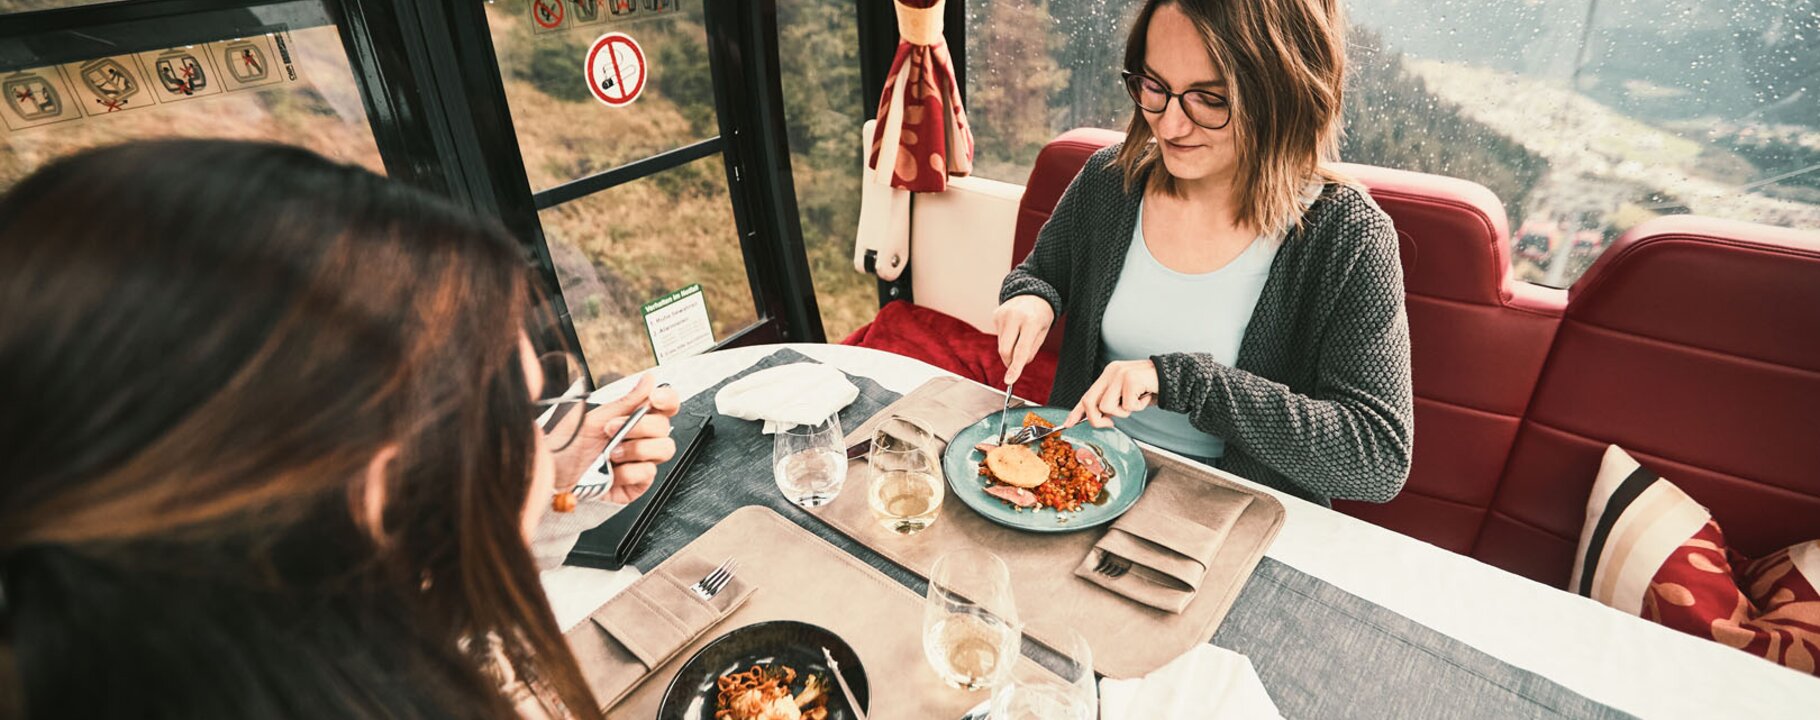 Mittagessen in der Genussgondel, das kleinste Restaurant der Welt - kulinarische Highlights in Serfaus-Fiss-Ladis | © Fisser Bergbahnen GmbH | christianwaldegger.com